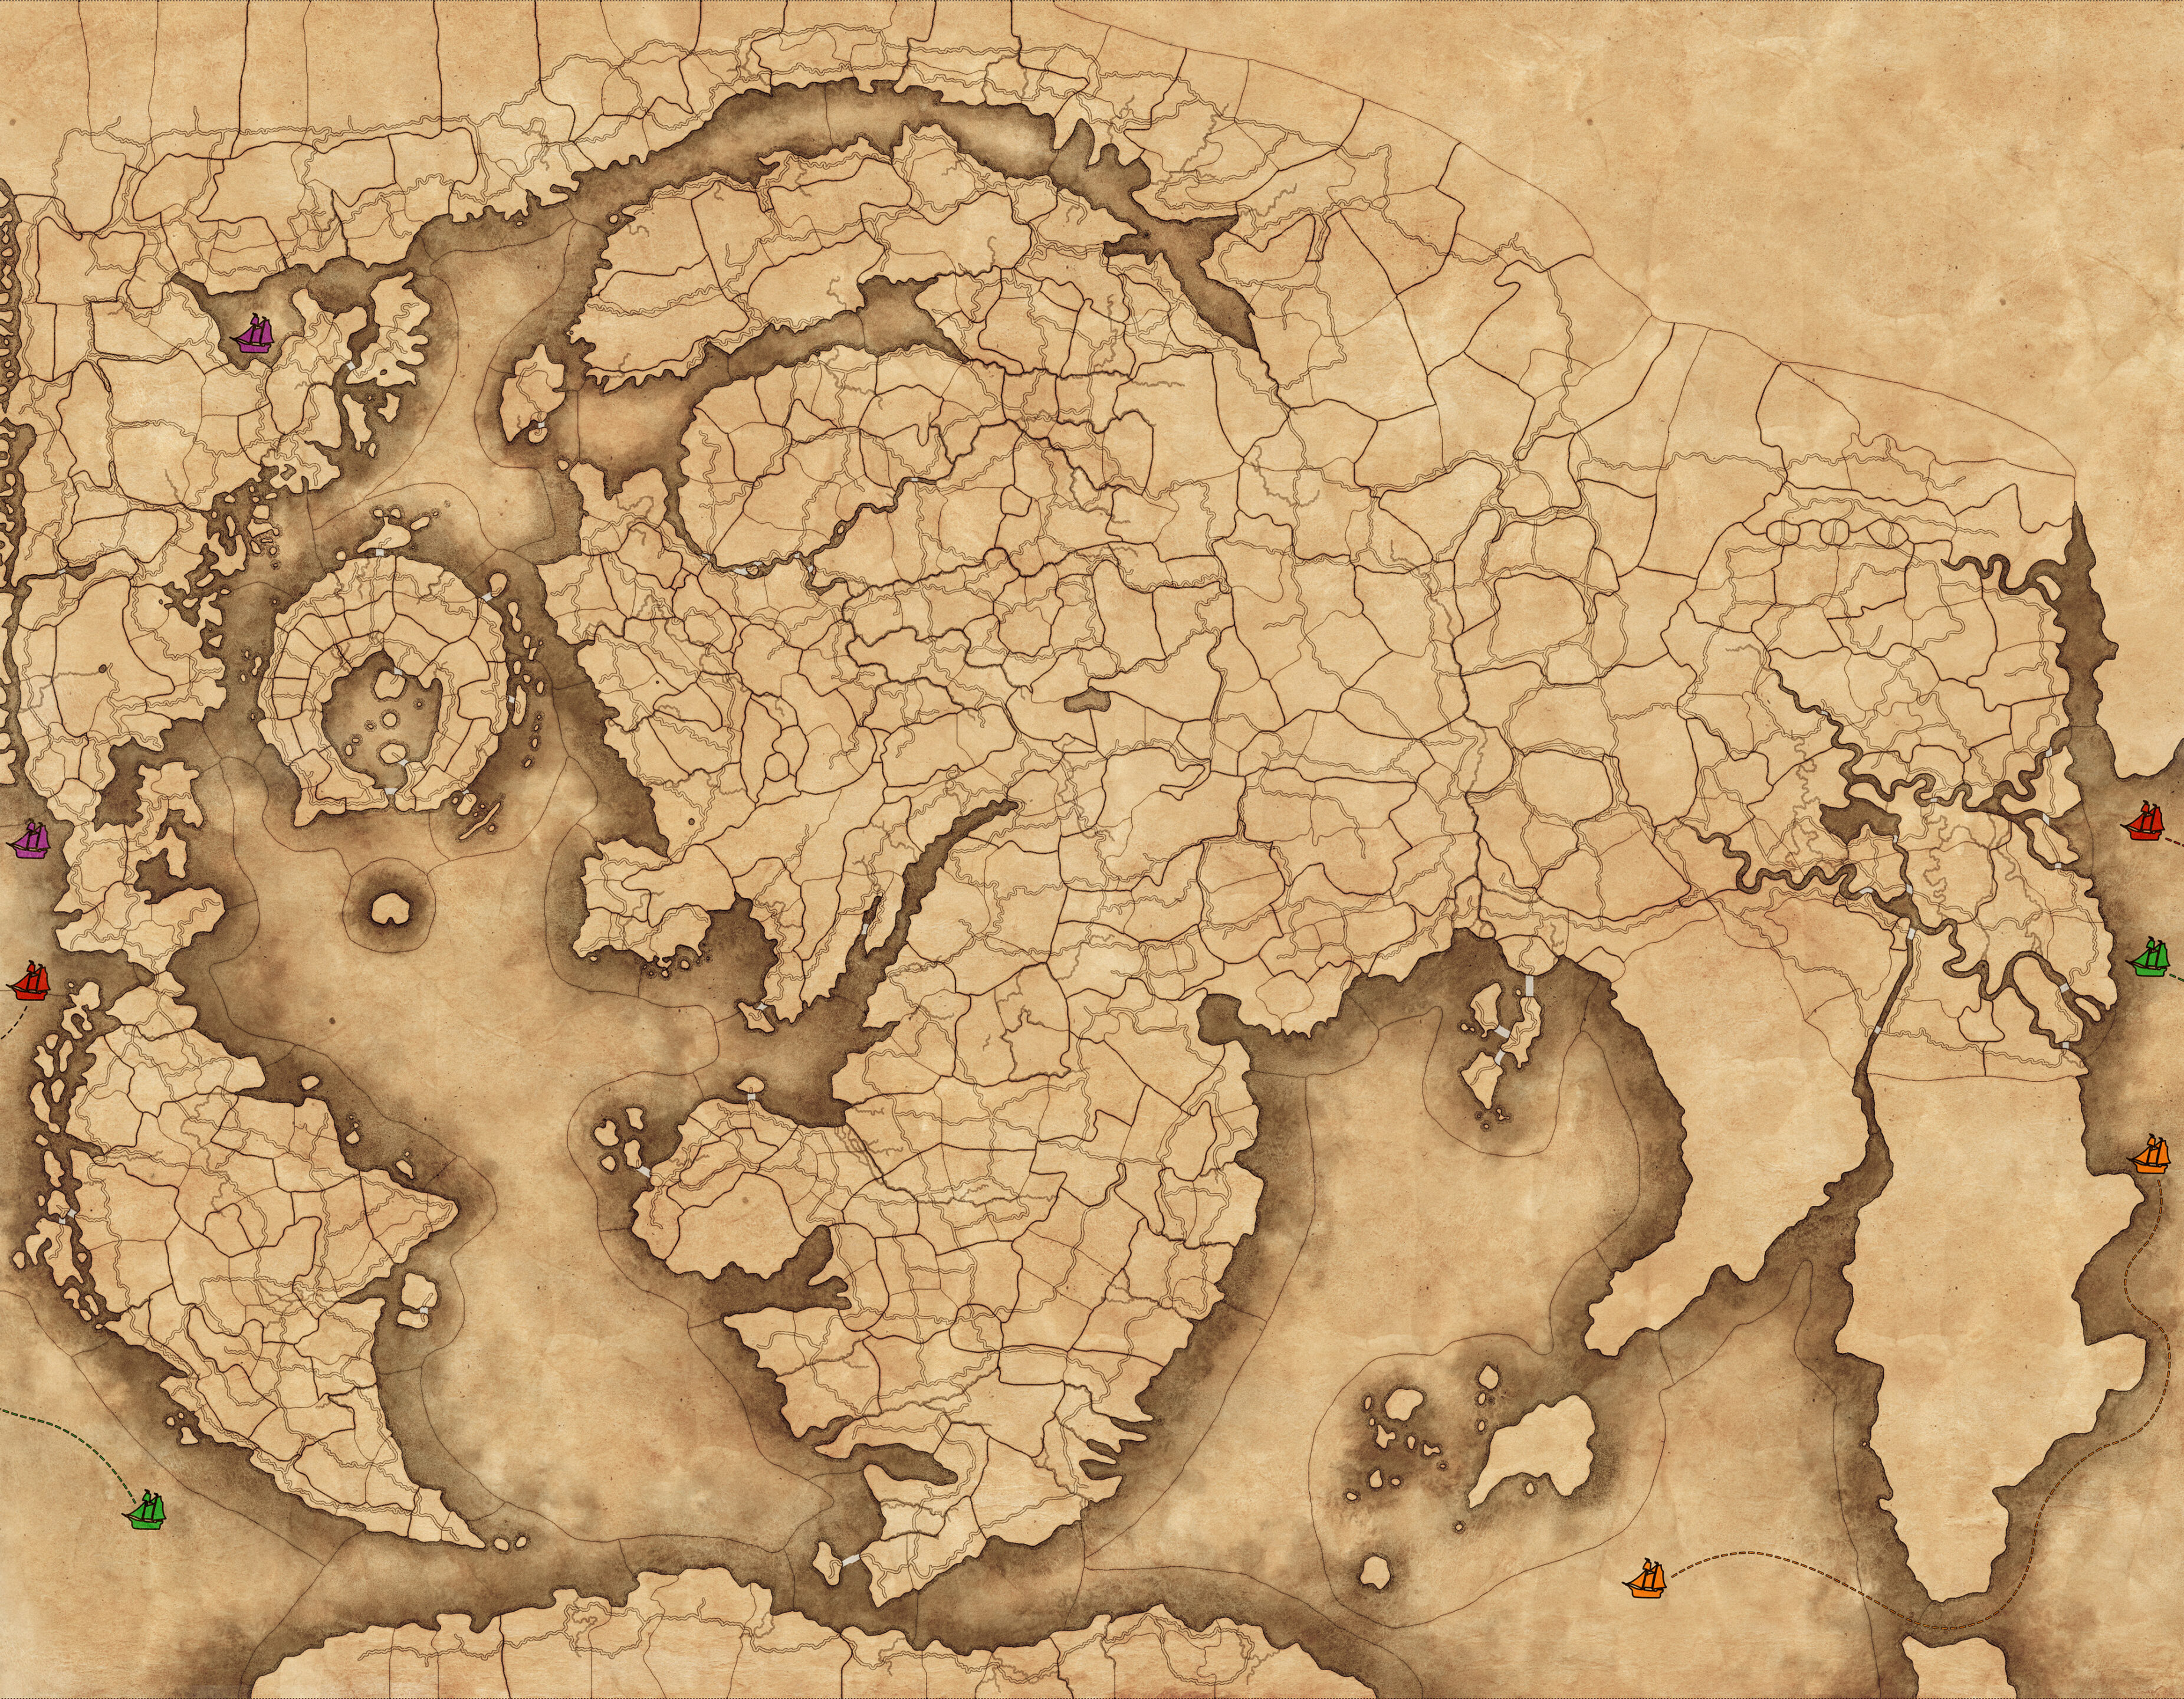 Obraz mapy trybu gry nieśmiertelnych imperiów, w tym kolorowe ikony łodzi, które reprezentują pasy morskie, które można wykorzystać do przekraczania dużych odległości świata